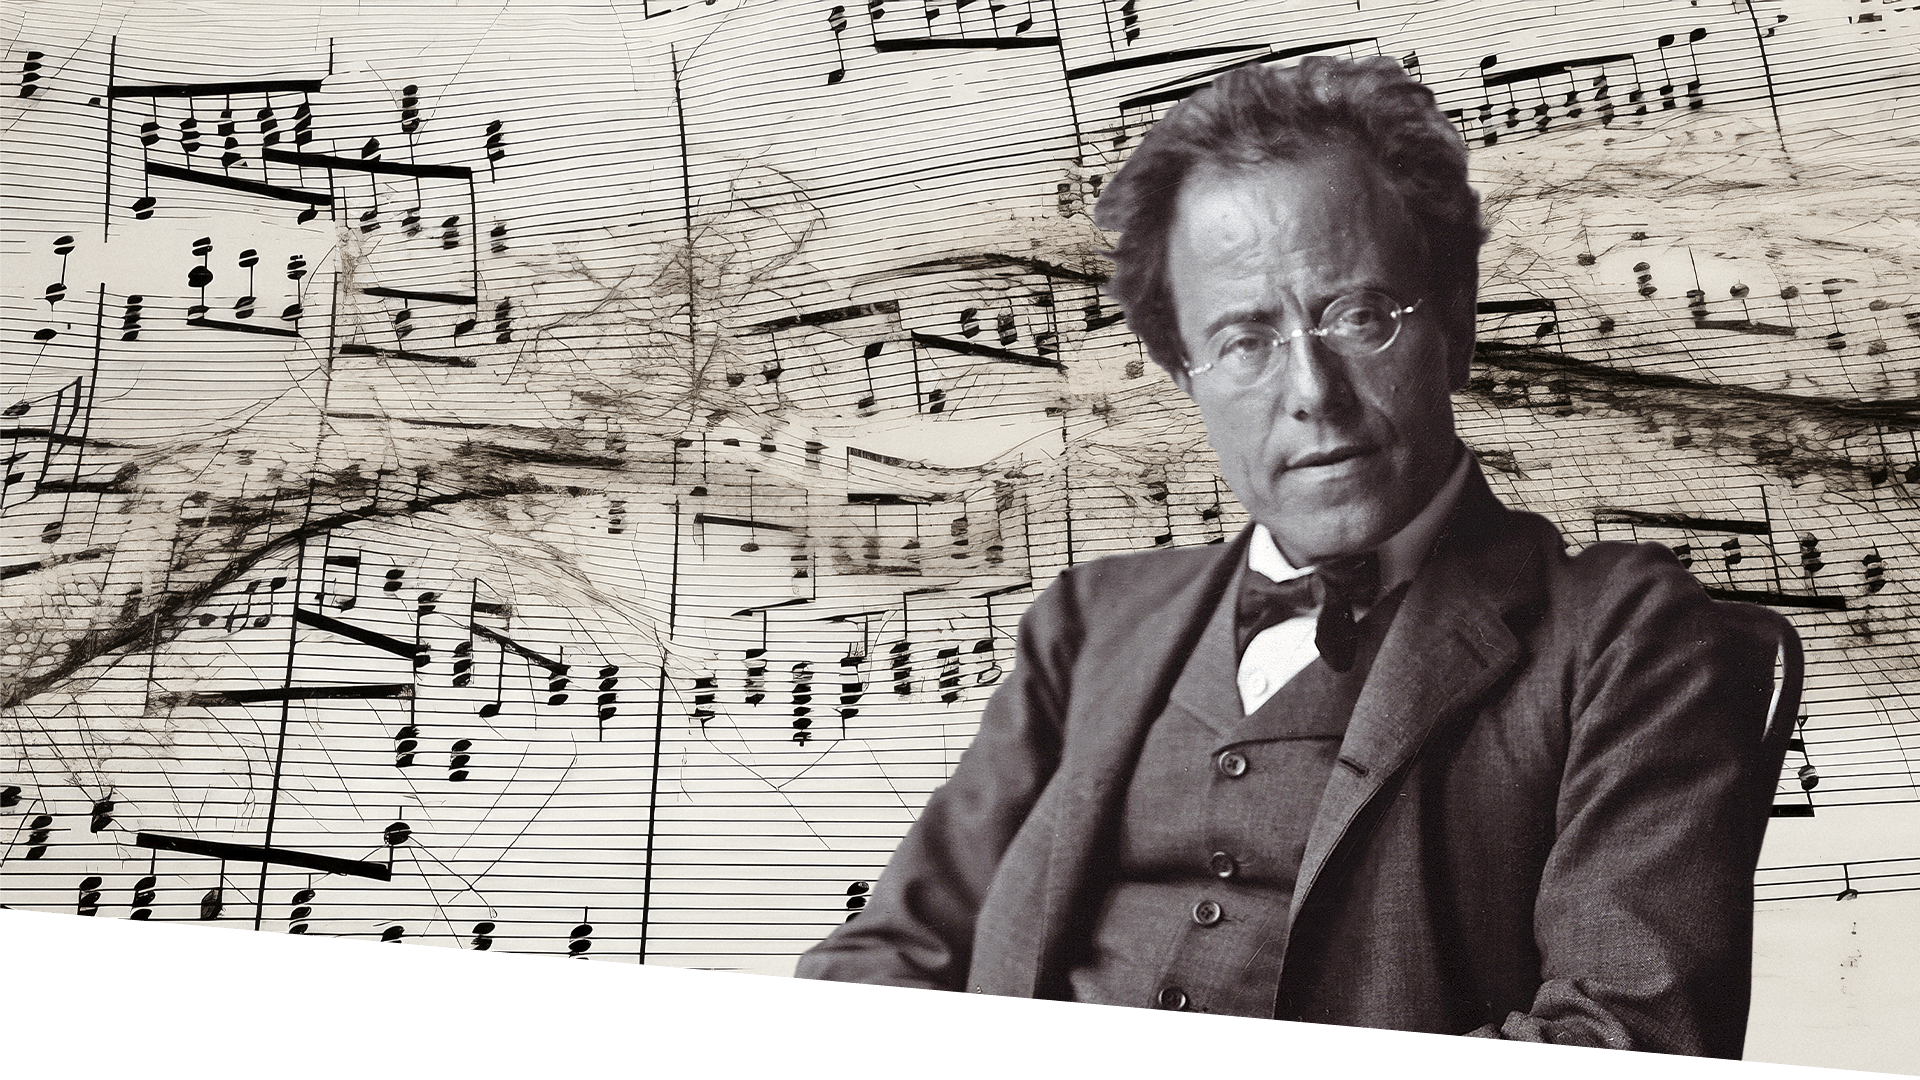 Musik fra en anden verden – nogle udsagn om Mahlers 9. symfoni